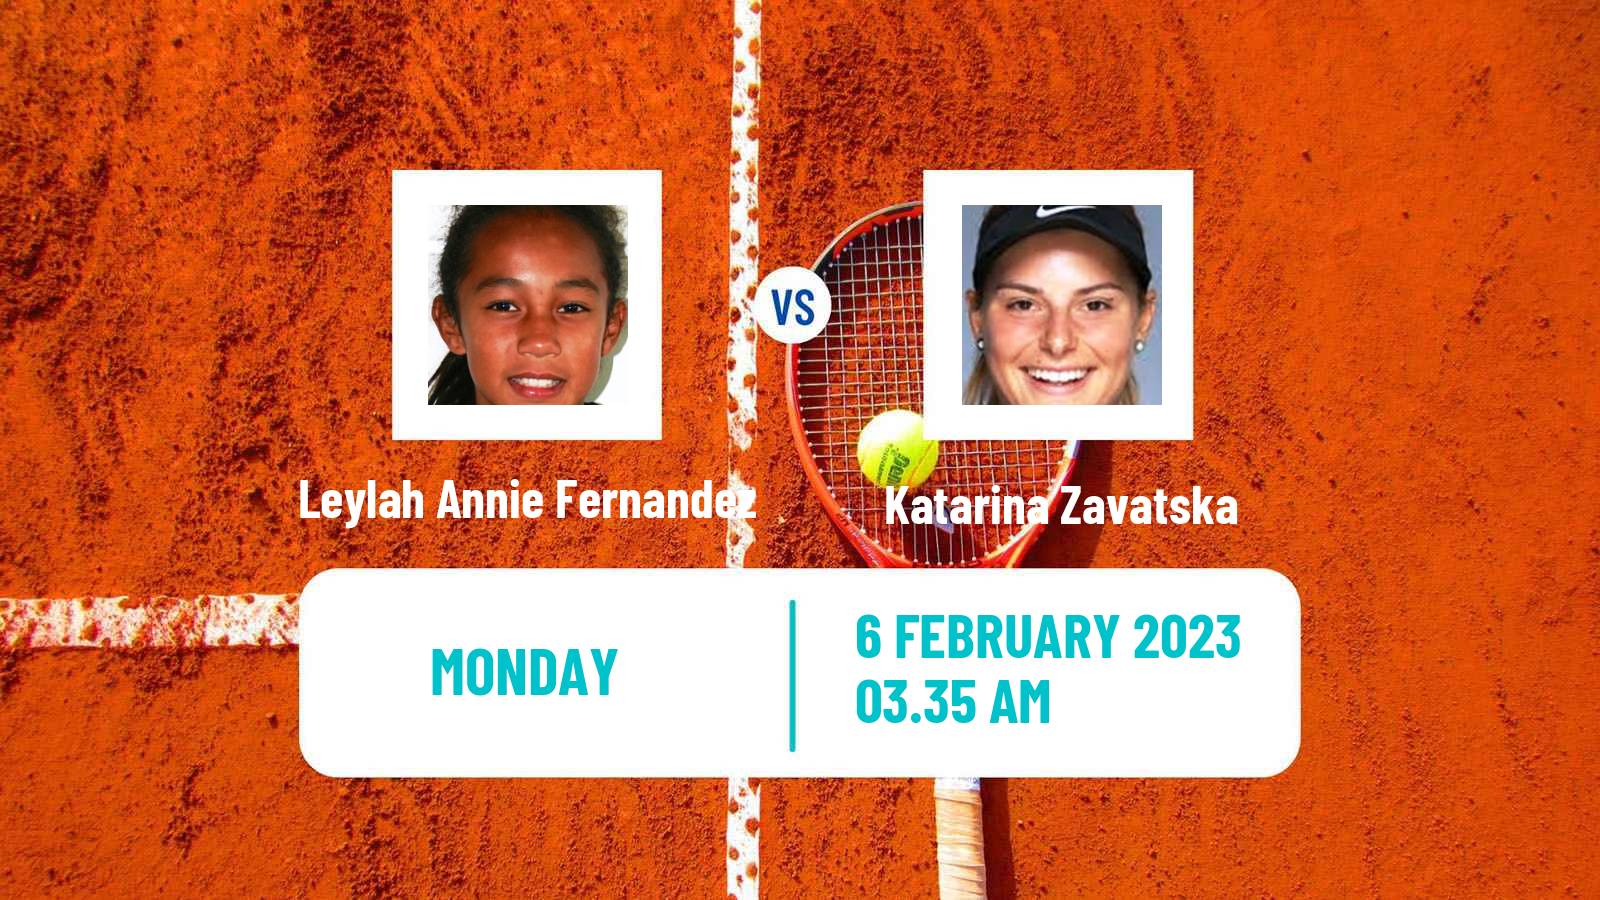 Tennis WTA Abu Dhabi Leylah Annie Fernandez - Katarina Zavatska